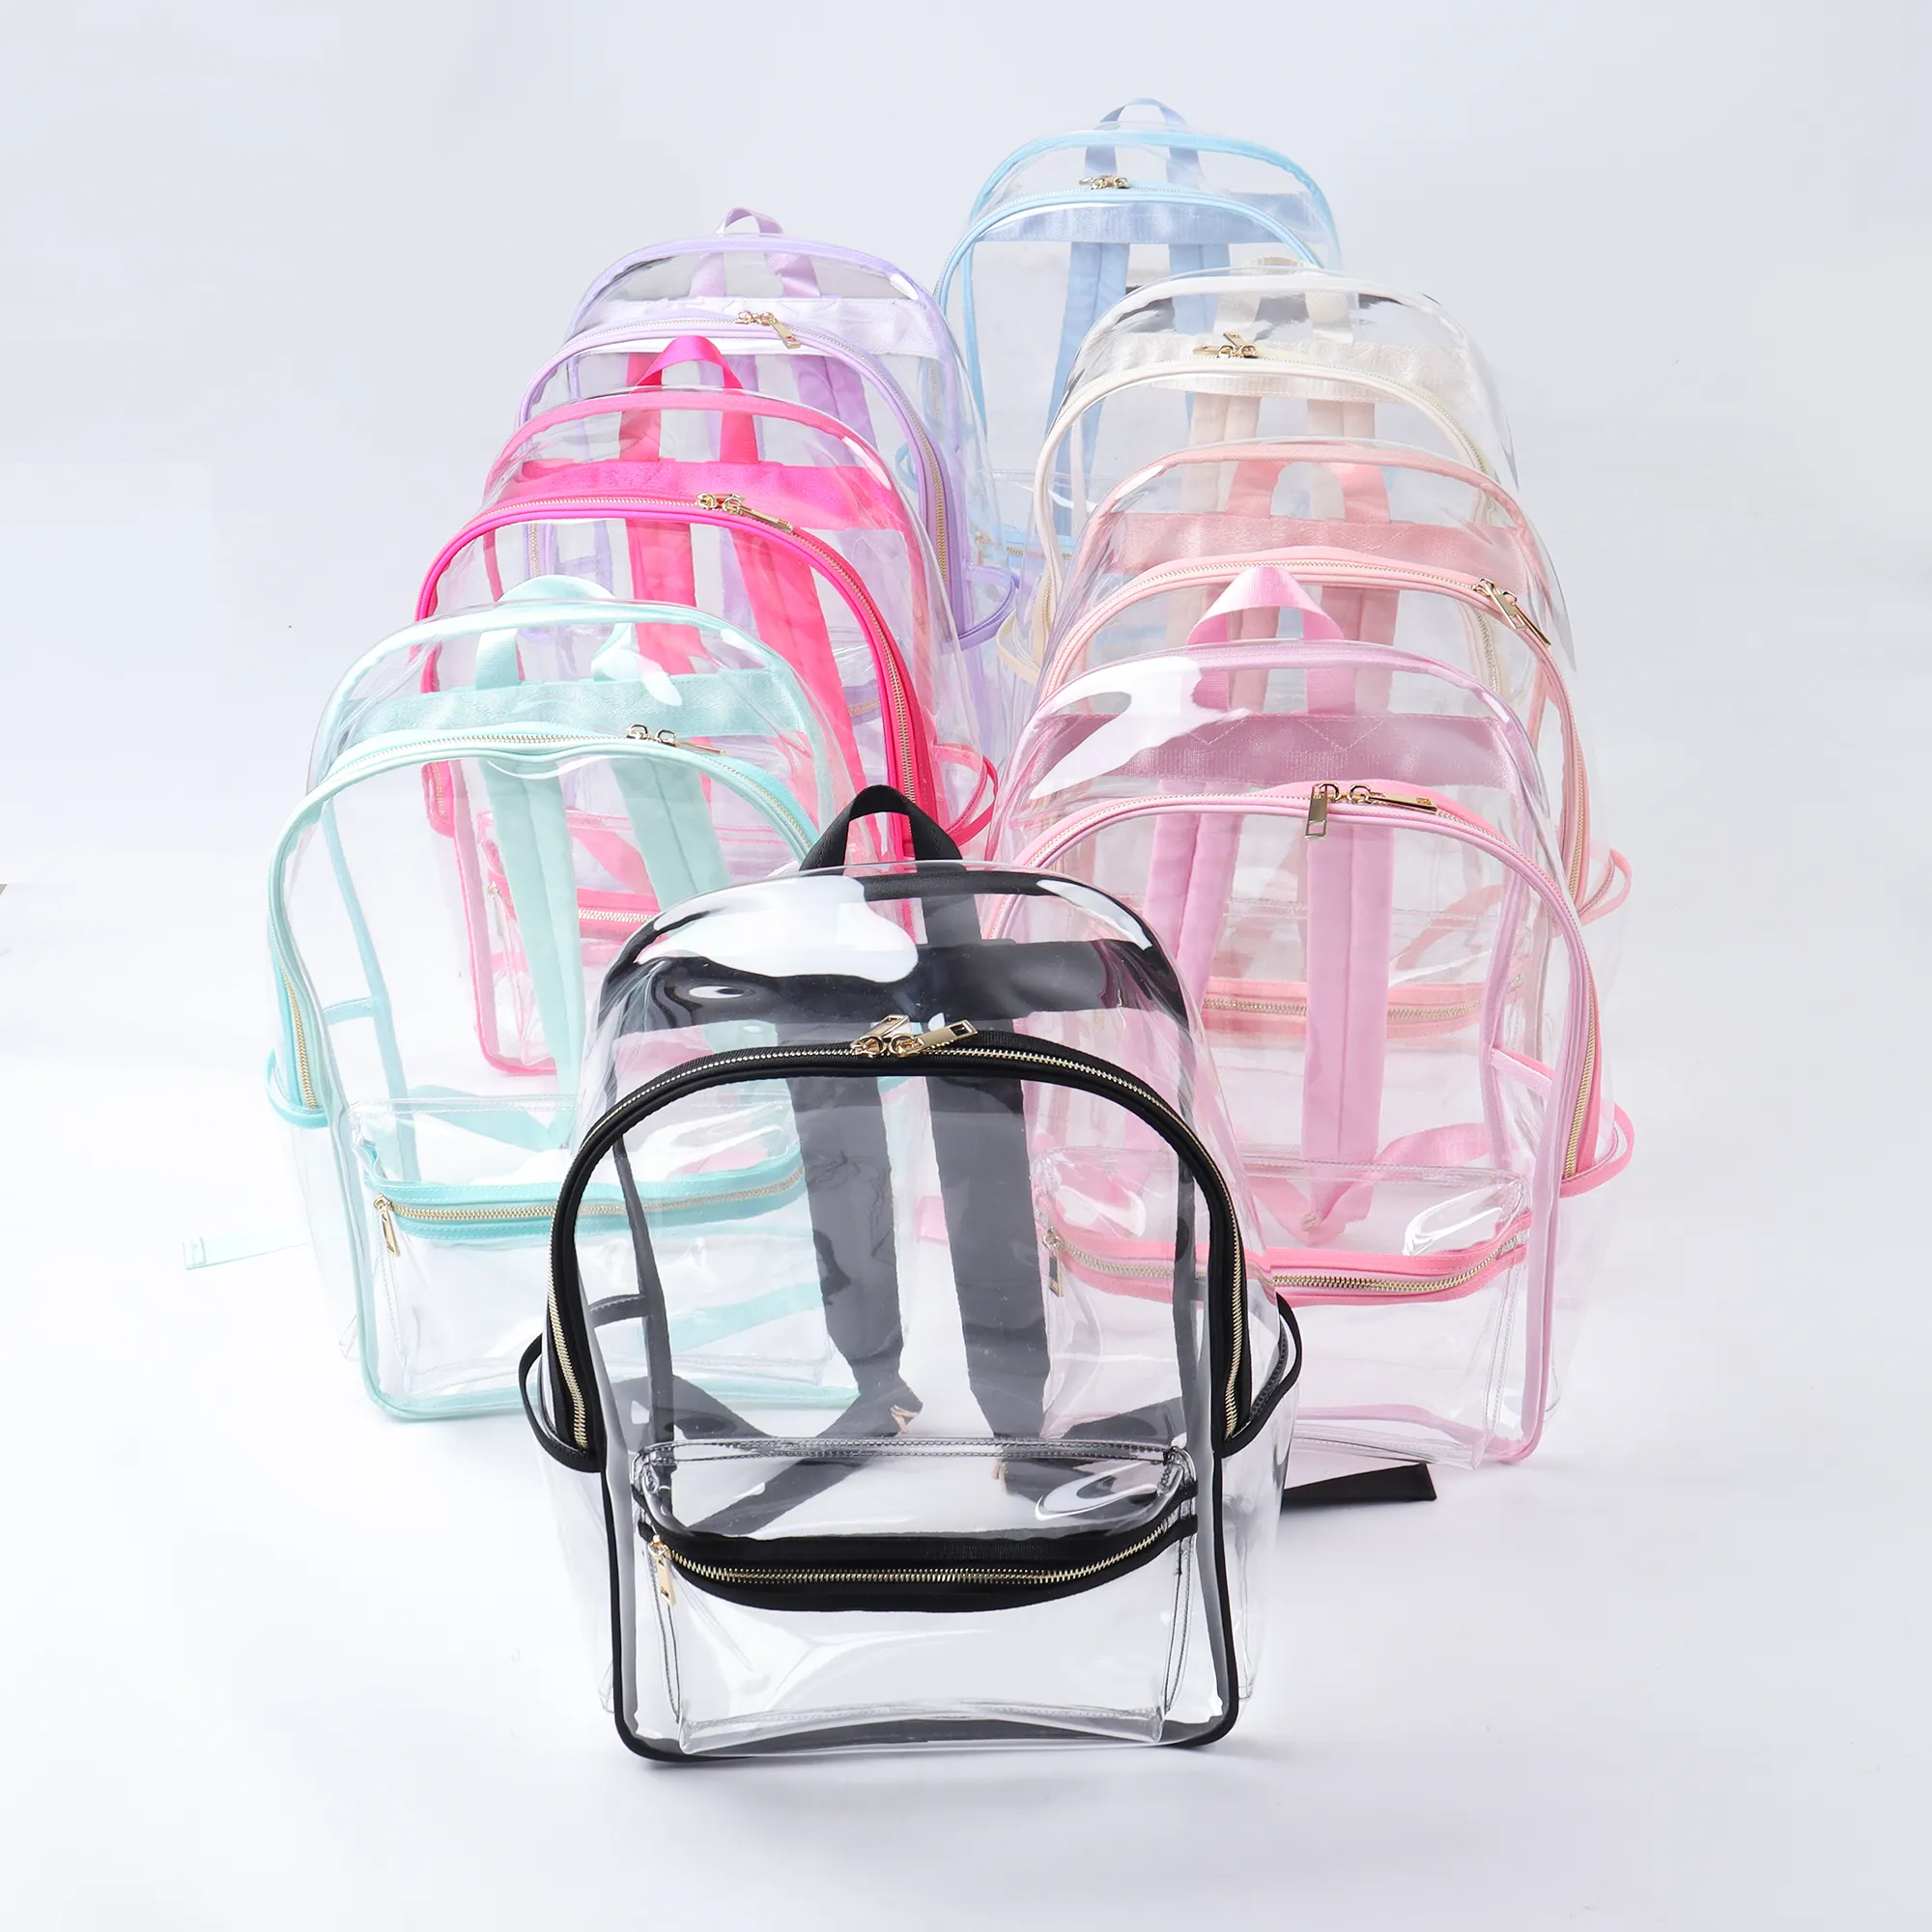 กระเป๋าเป้สะพายหลังสำหรับเด็กขนาดใหญ่กระเป๋าสะพายหลังแบบใสทำจาก PVC ใสปรับแต่งสีสันสดใสได้